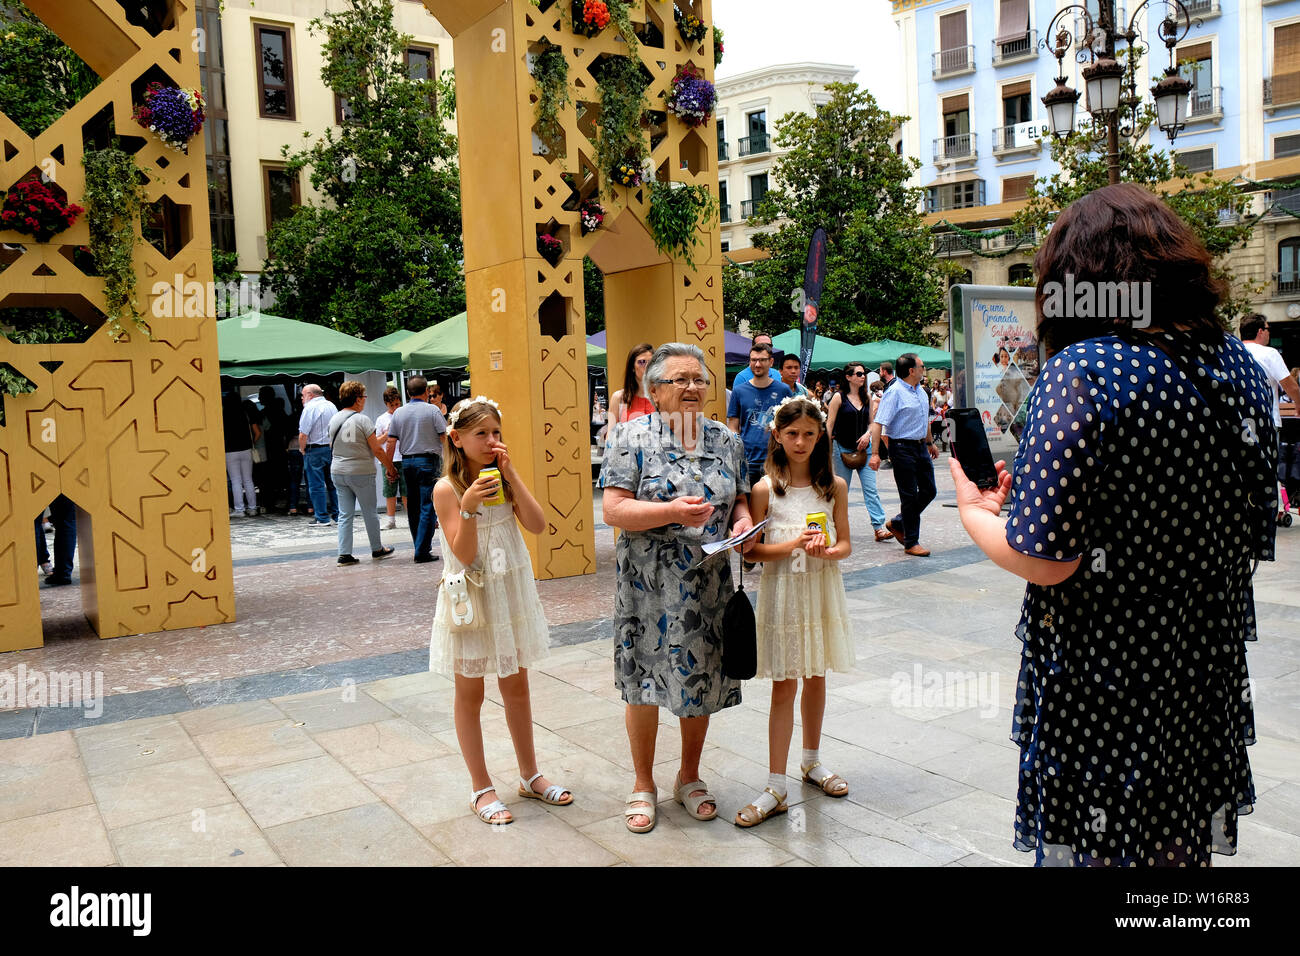 Zwilling Mädchen und ihre Großmutter an ihre Mutter in einer Plaza in Granada, Spanien; drei Generationen: Enkelinnen, Oma und Mama. Stockfoto